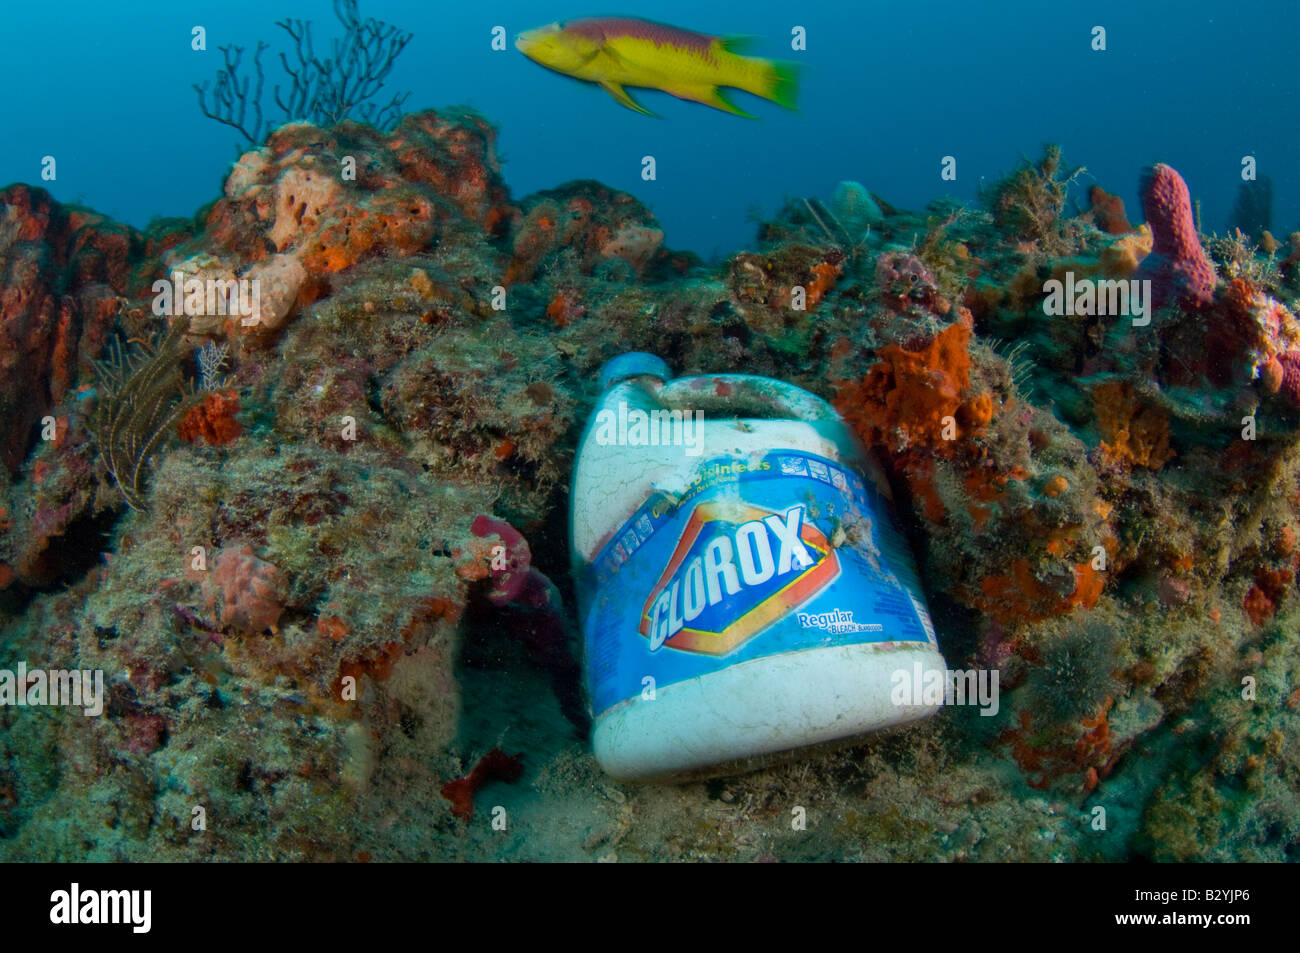 Una bottiglia di candeggina utilizzata da aragosta senza scrupoli i pescatori a catturare illegalmente le aragoste in Florida Foto Stock